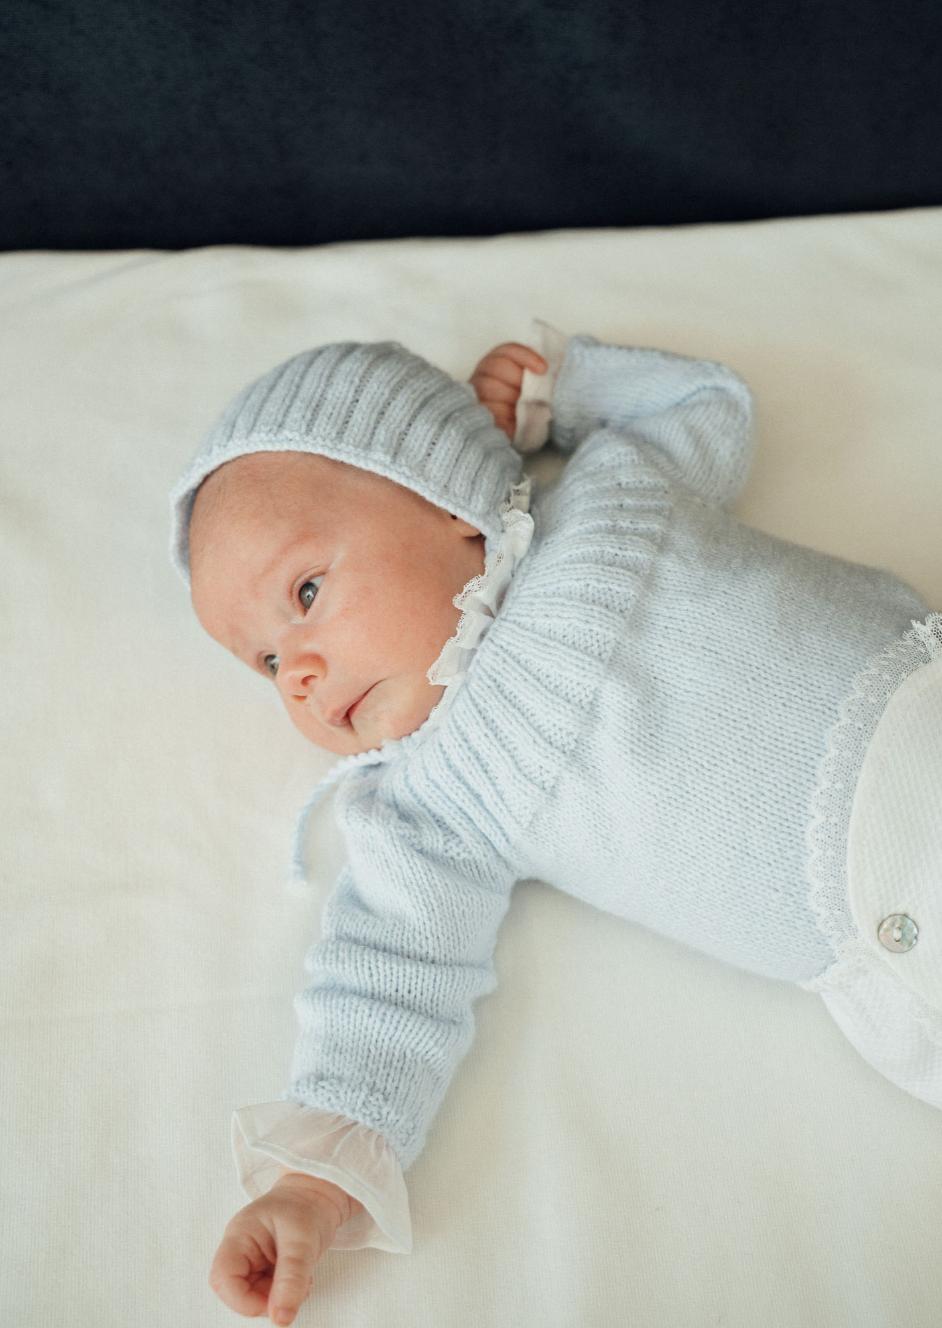 10 marcas españolas para vestir a tu bebé